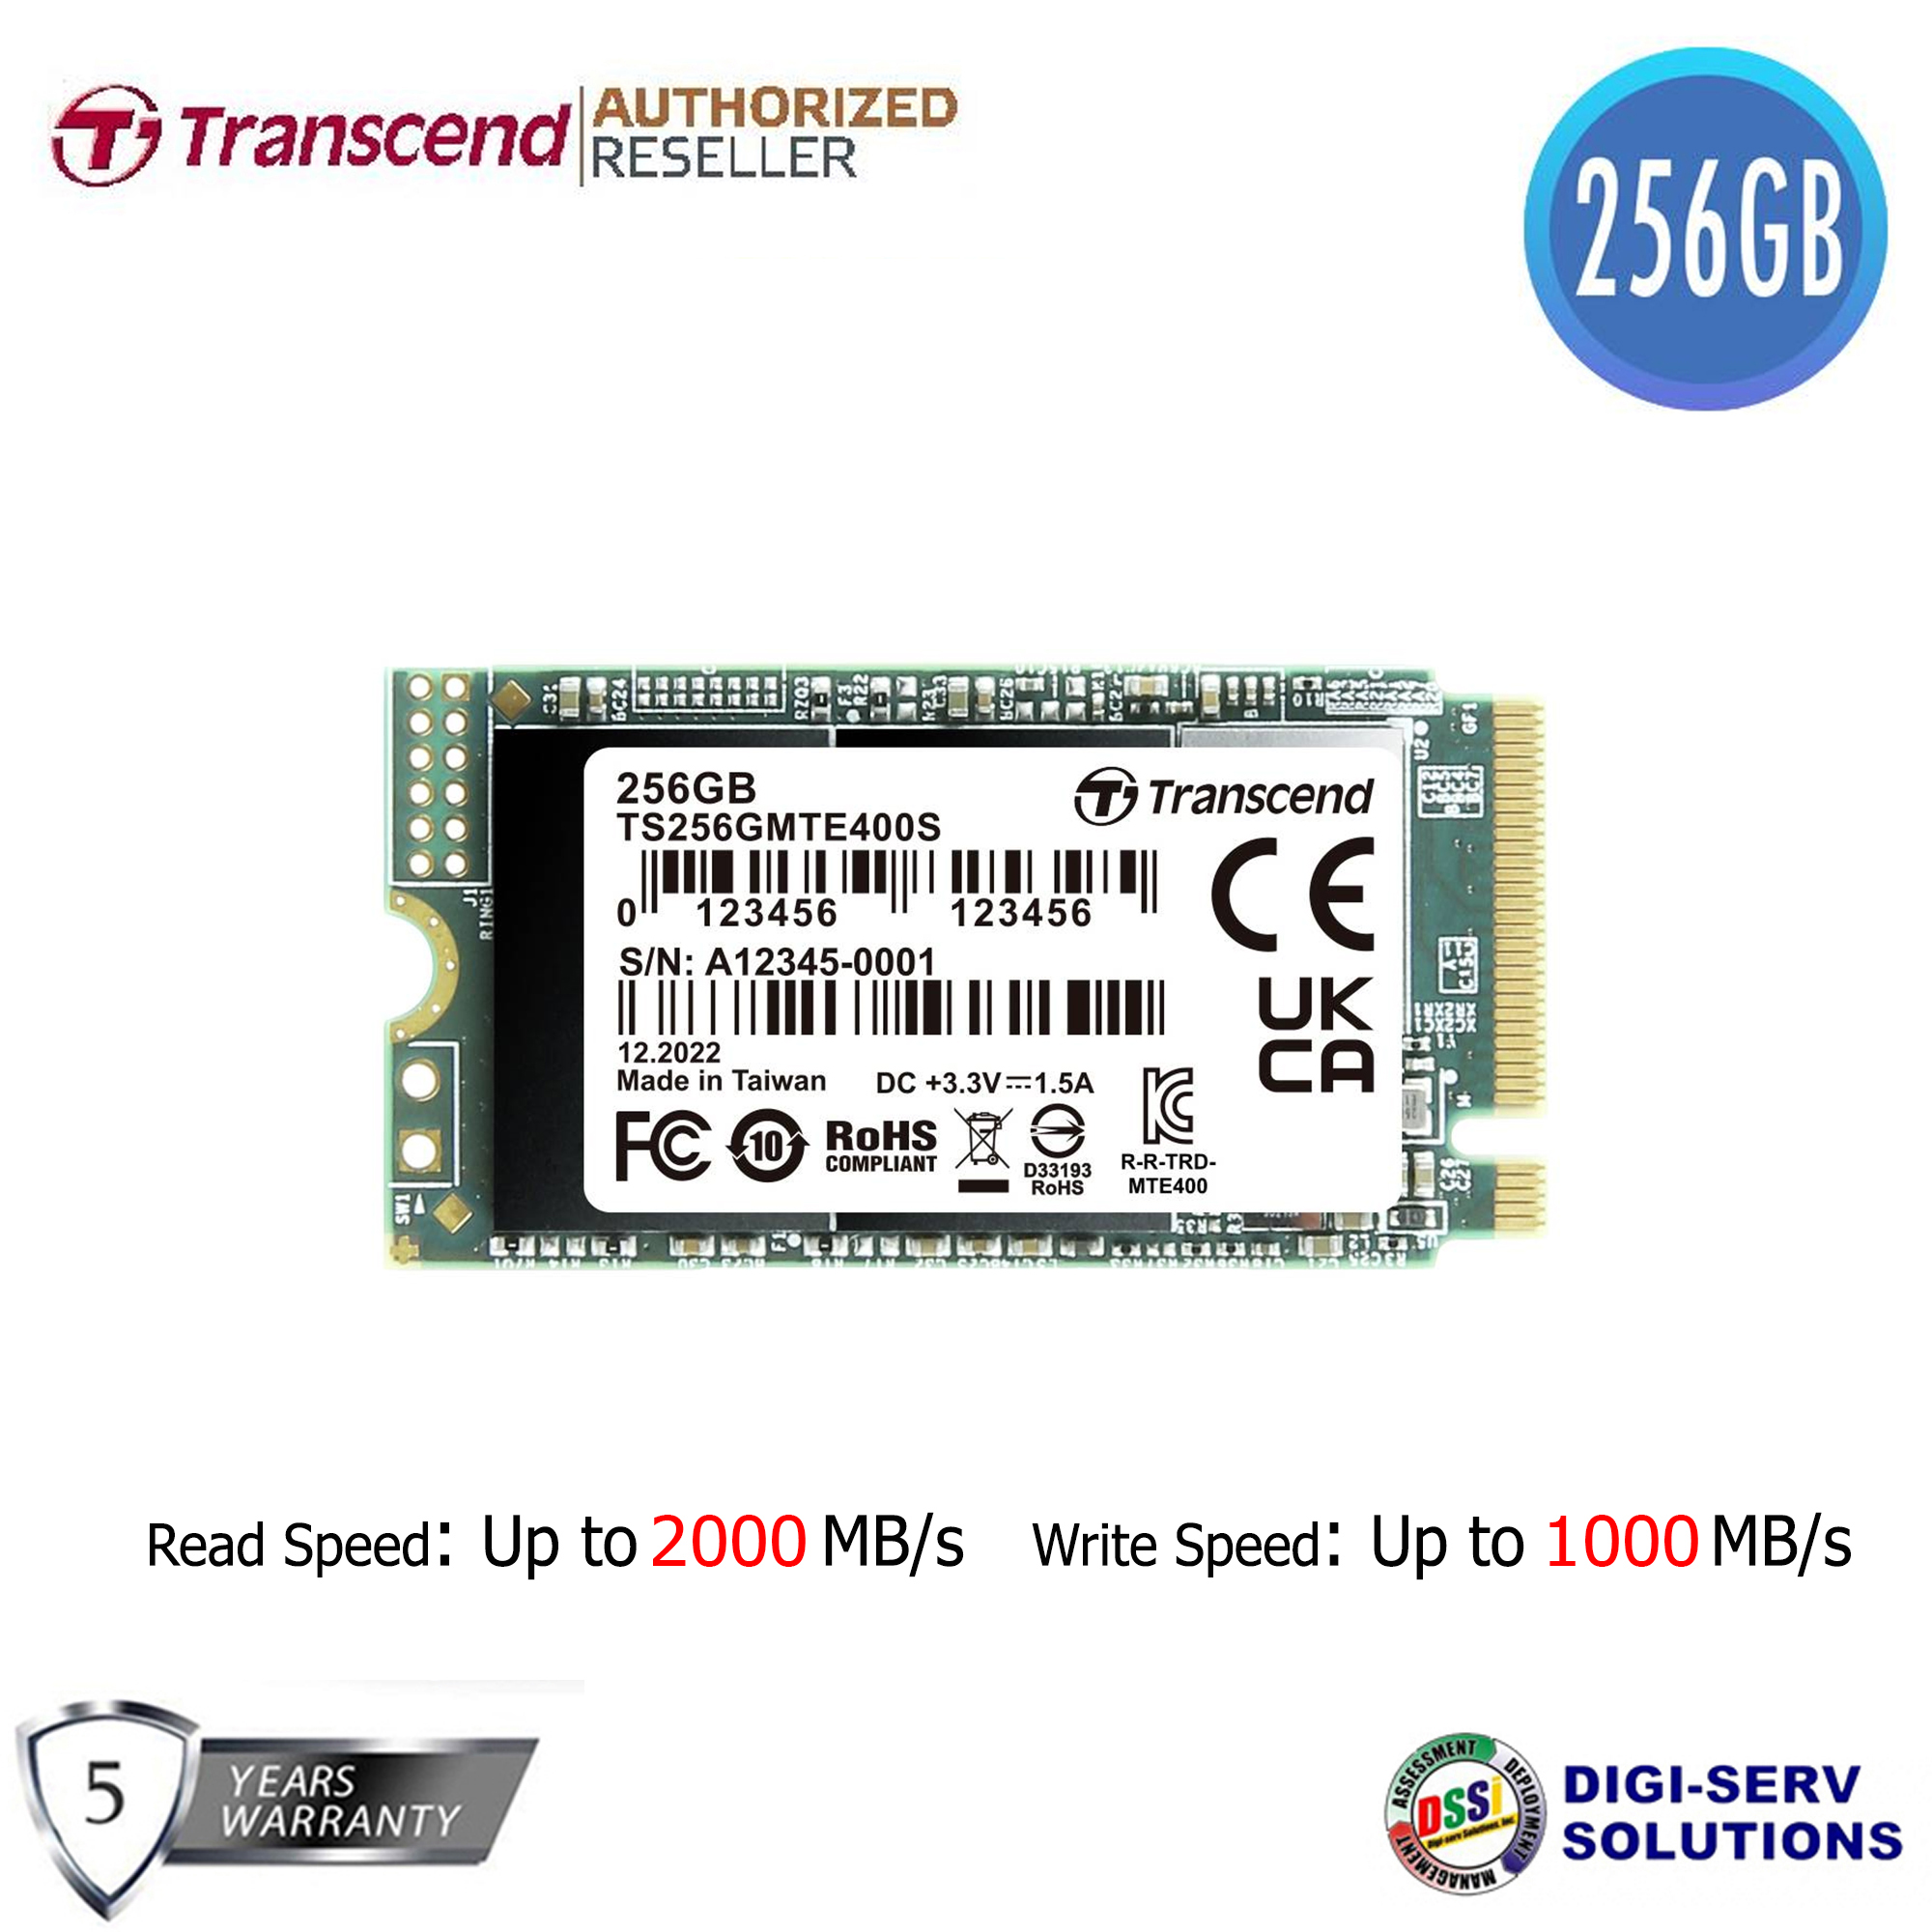 保証 Transcend SSD 256GB M.2 2242 SATA III 6Gb s TS256GMTS400